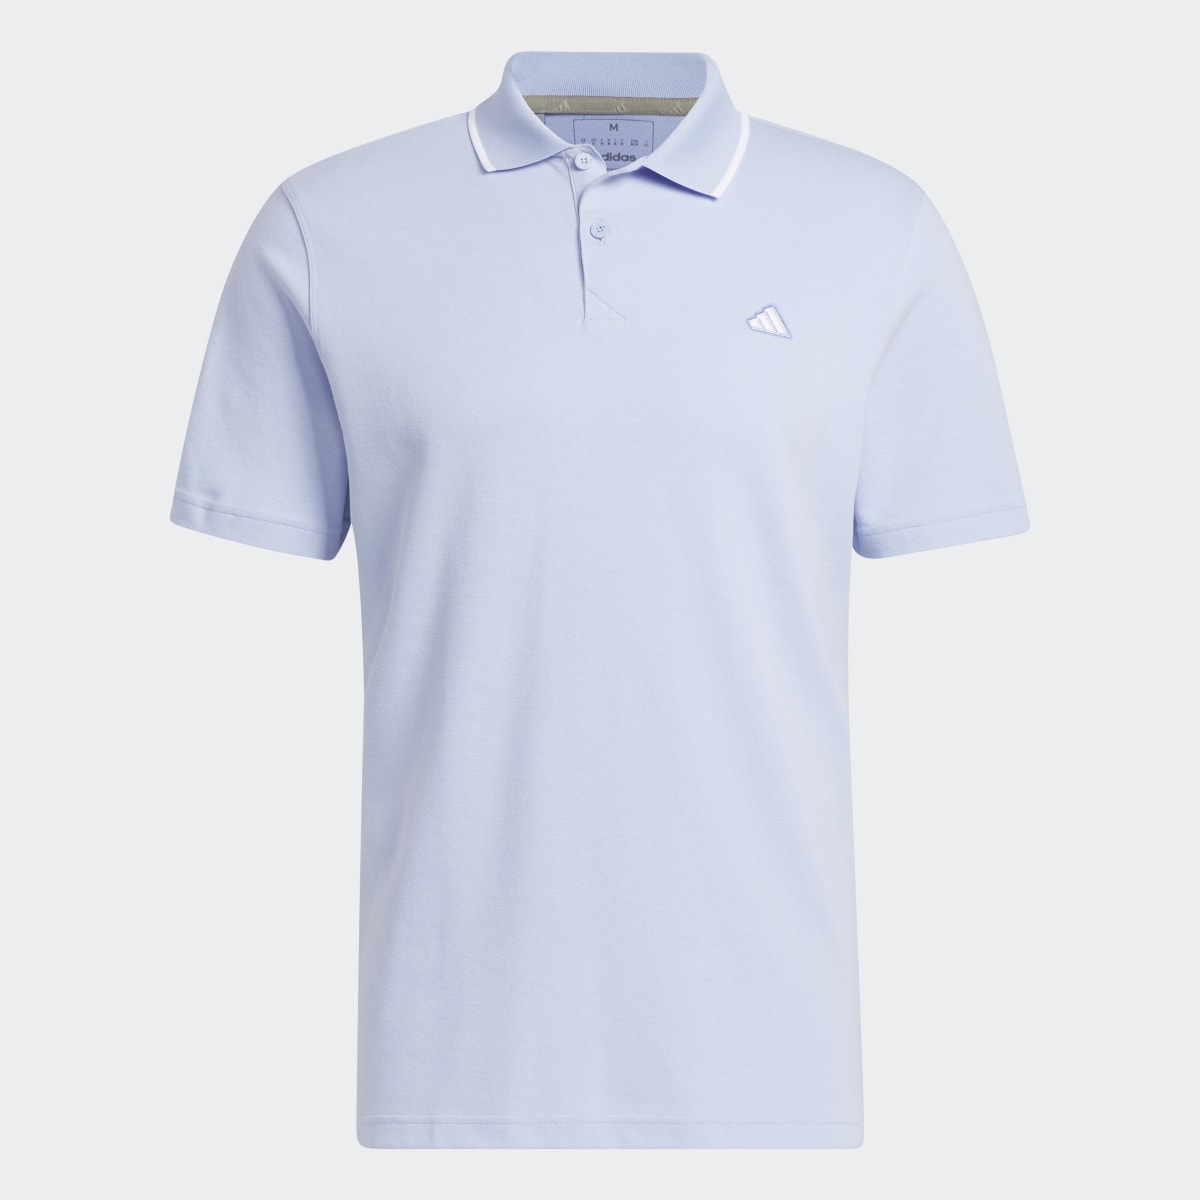 Adidas Go-To Piqué Golf Polo Shirt. 5